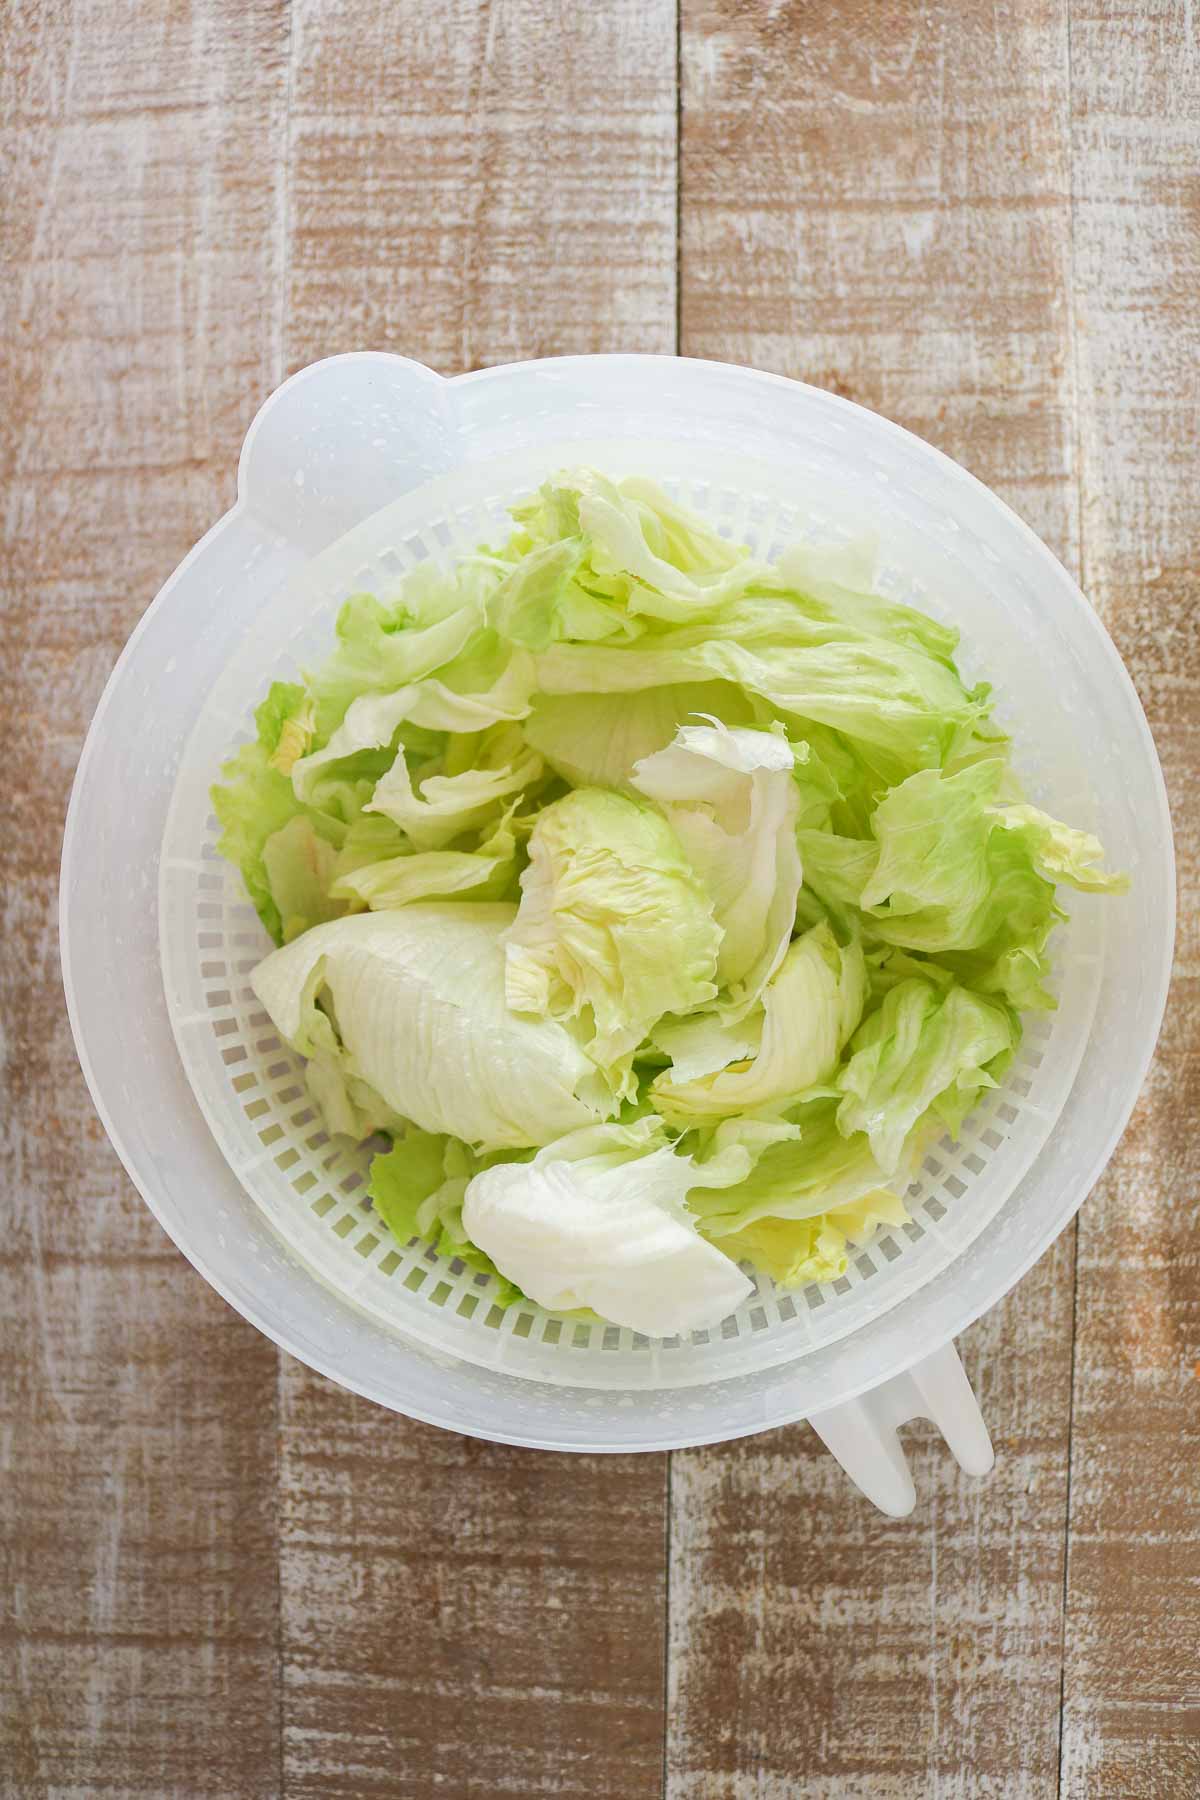 Iceberg lettuce in a salad spinner.